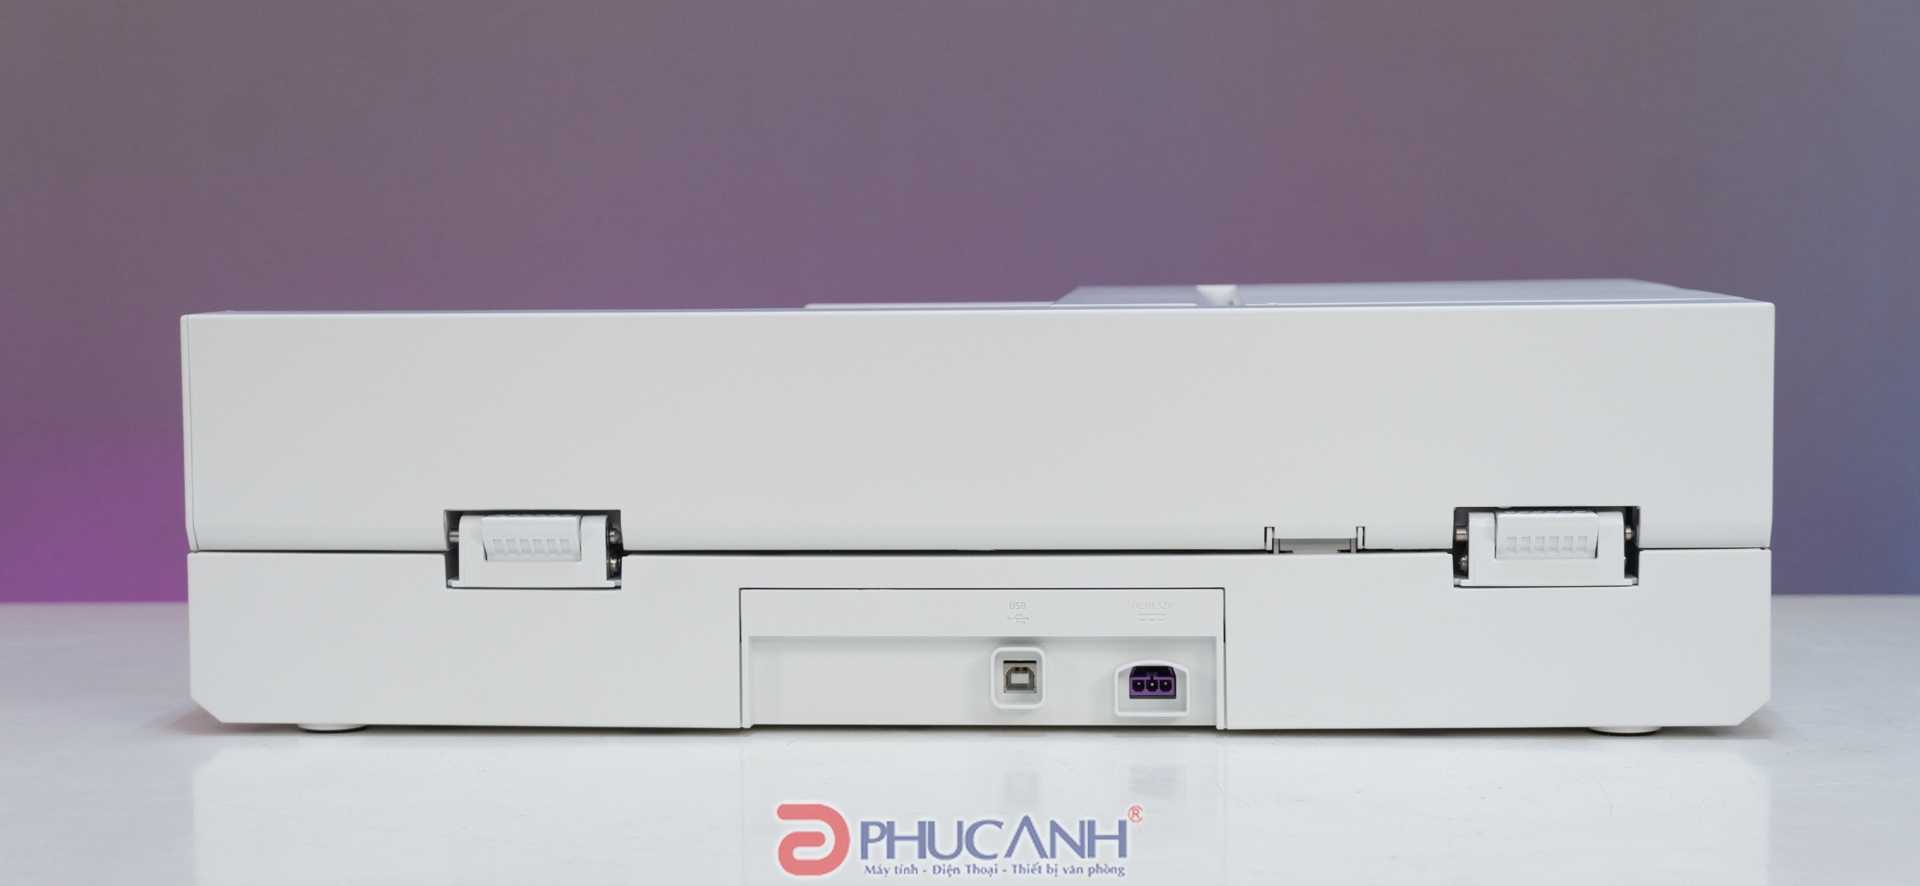 review máy Scan HP ScanJet Pro 2600 F1